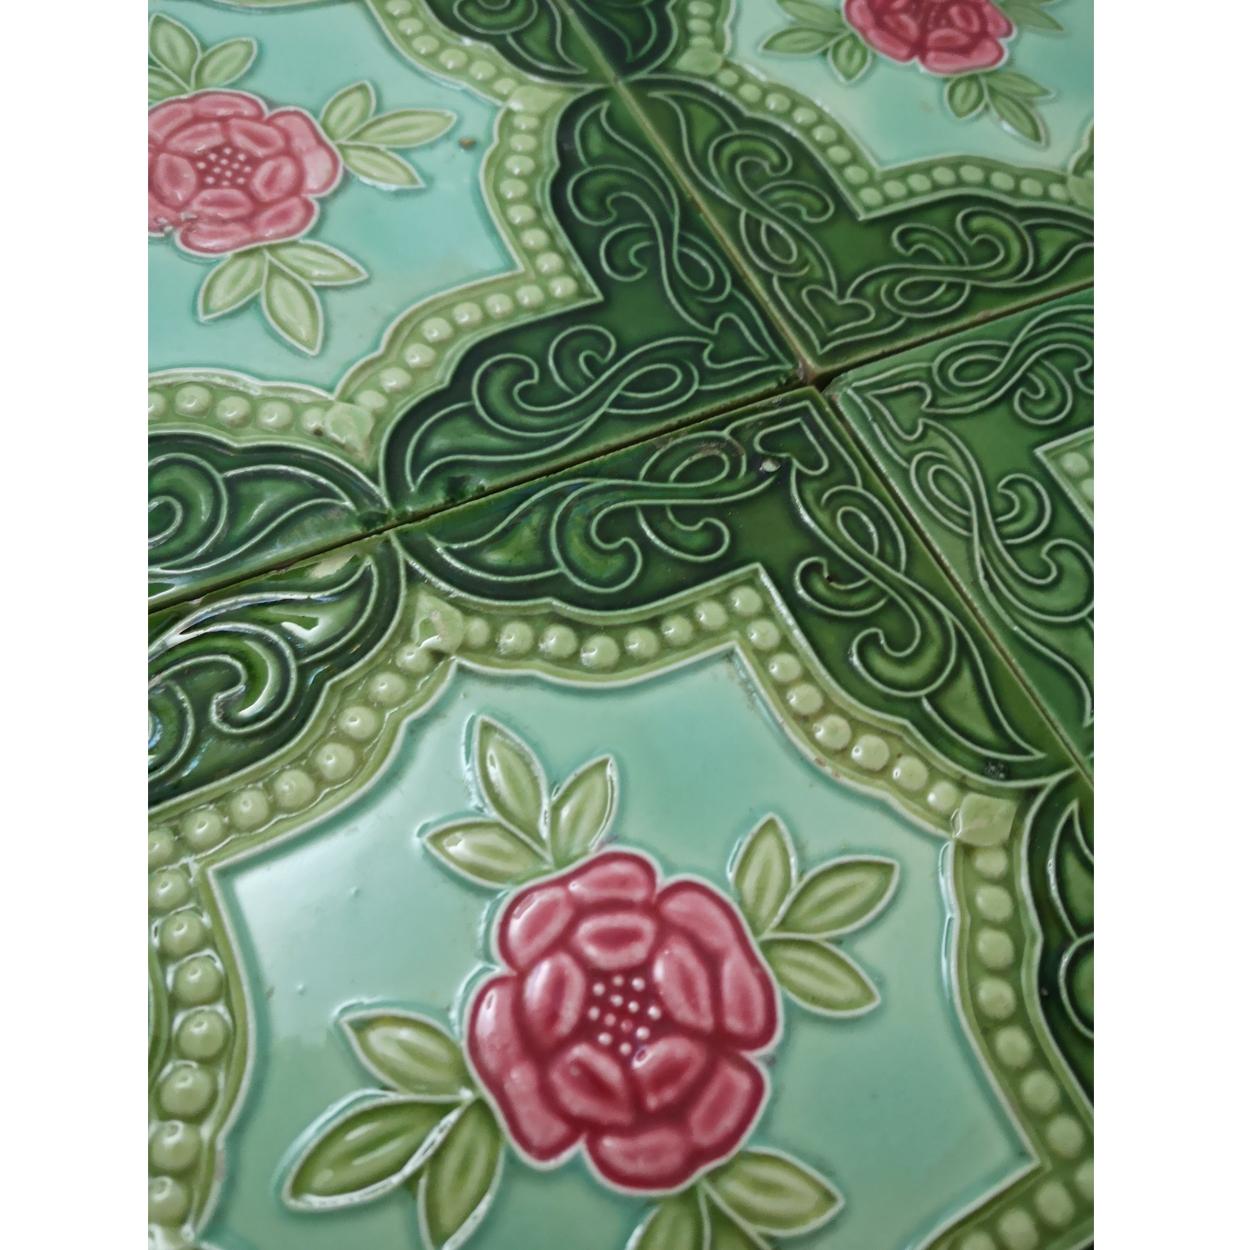 Mix of 25 Glazed Relief Tiles By S.A. Produits Ceramiques de la Dyle, 1930s 1